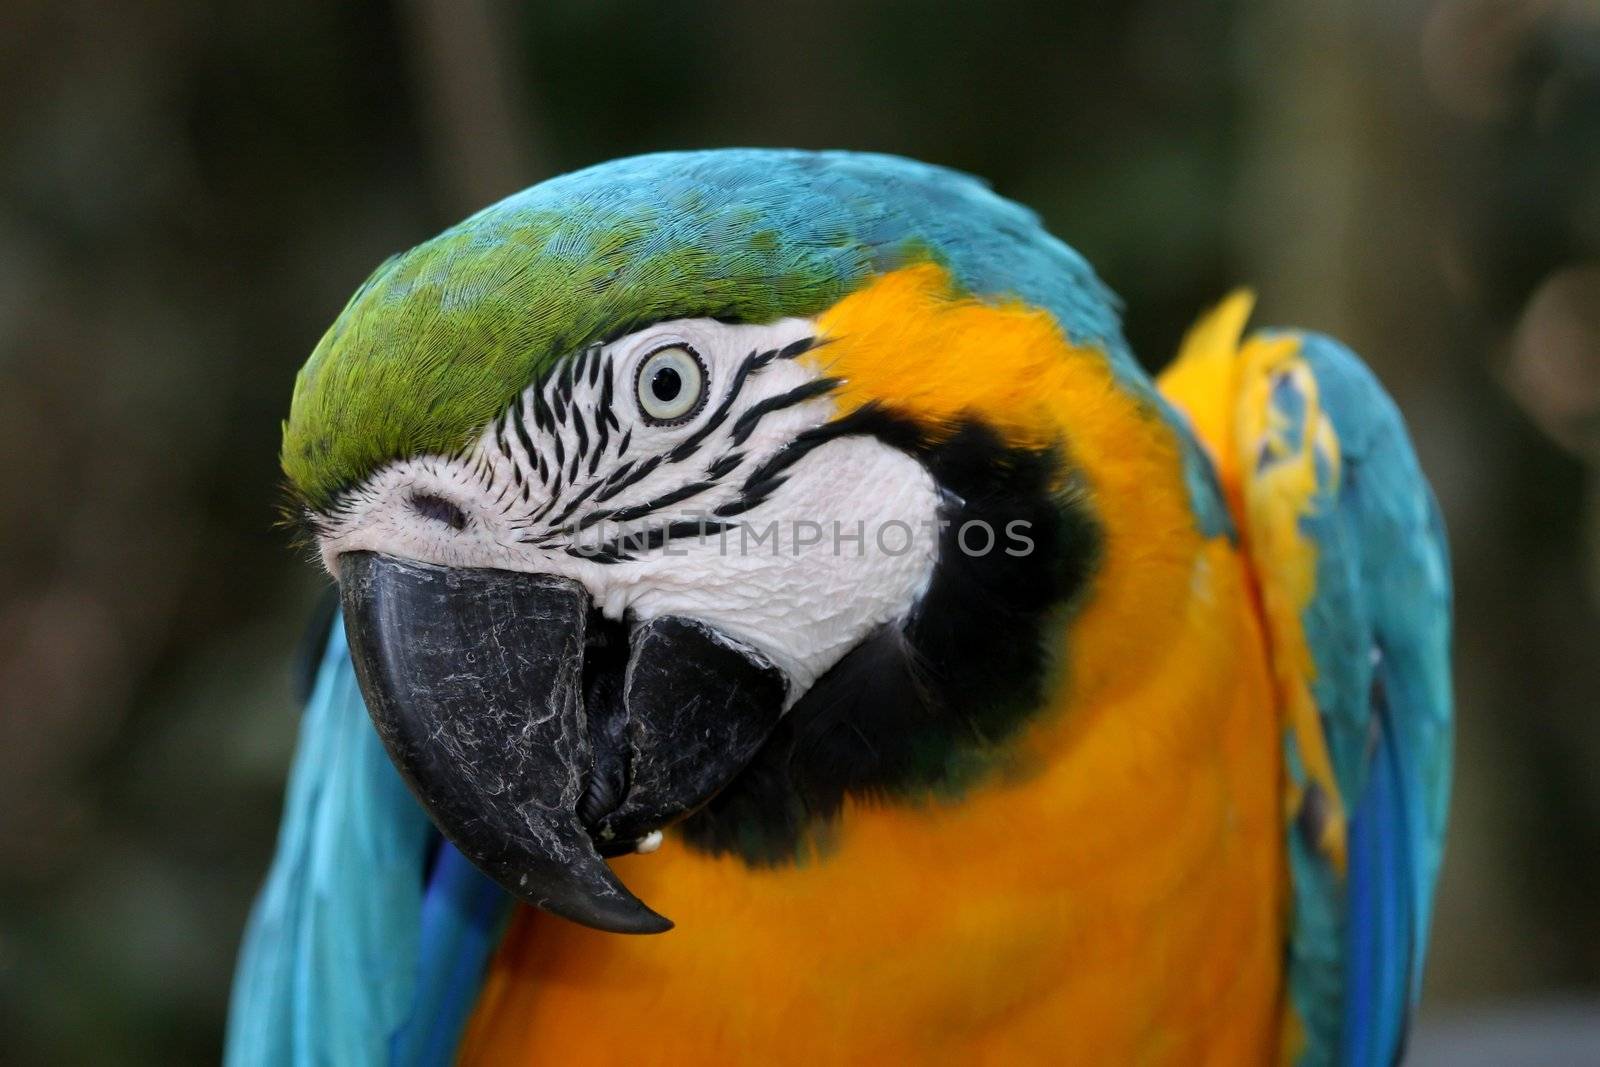 Macaw Parrot Portrait by fouroaks